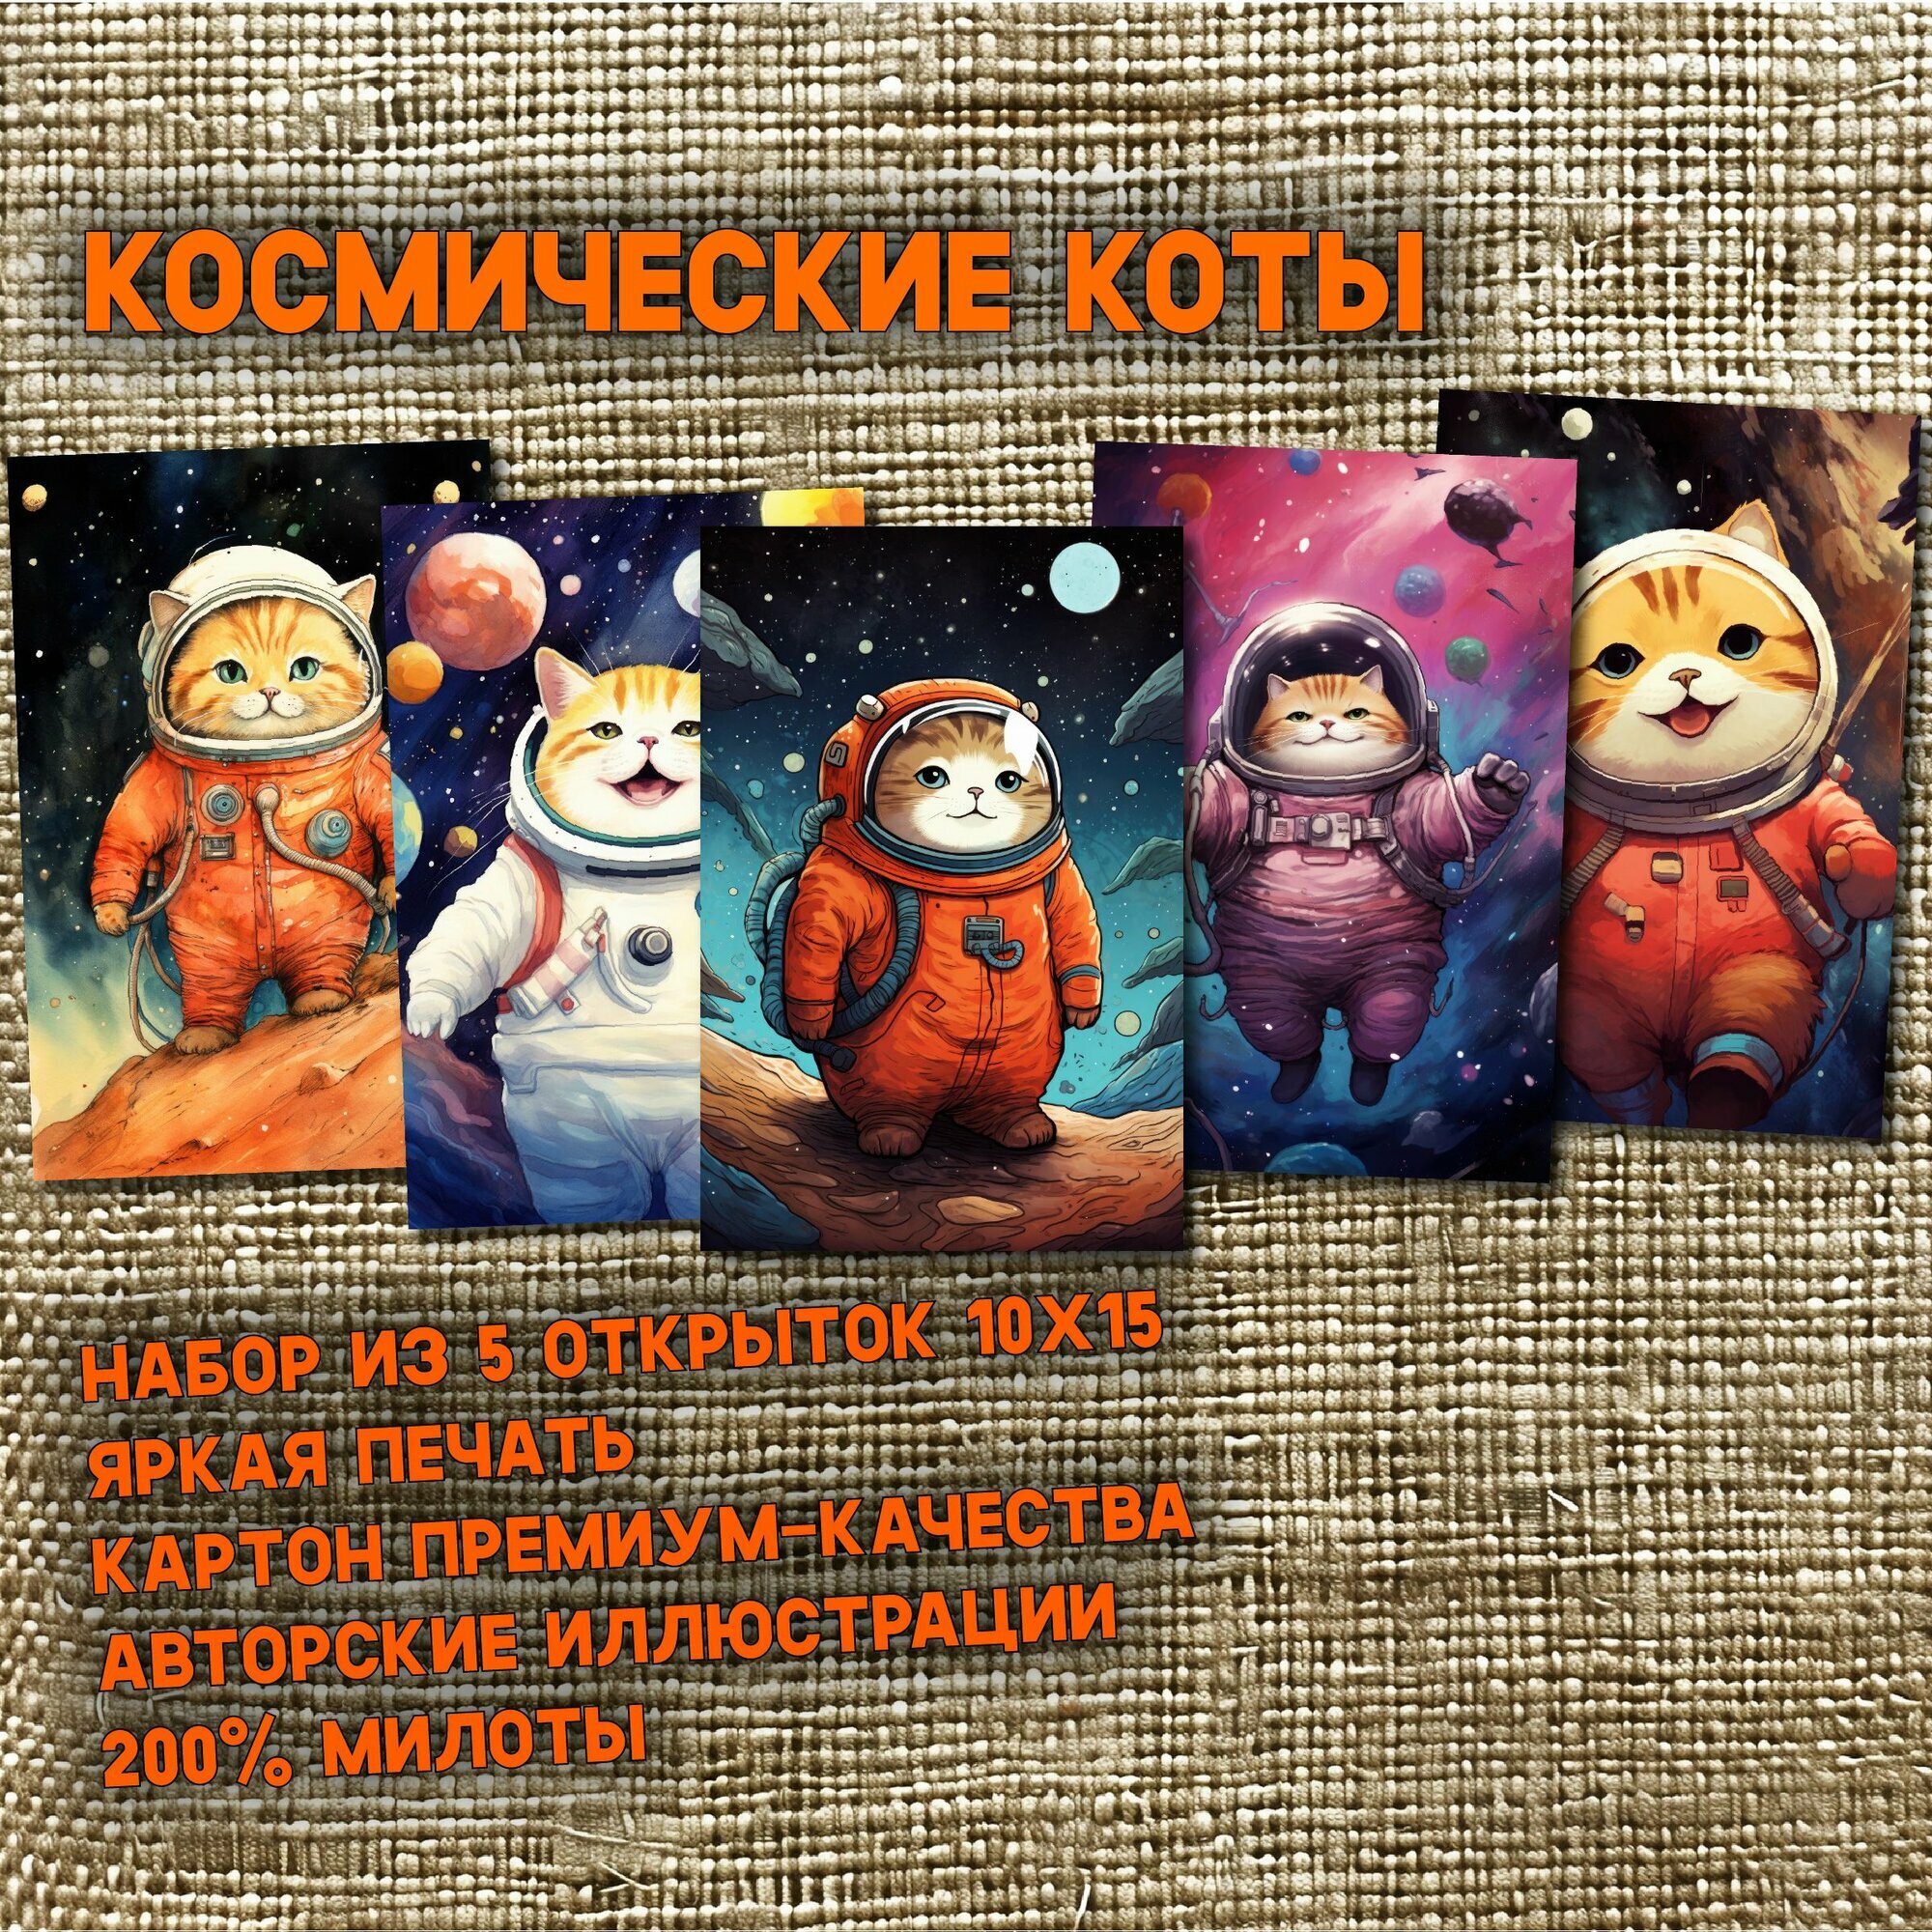 Космические мурчалки B: набор из 5 открыток про котов-космонавтов на орбите ярких планет, для посткроссинга и поздравлений, к дню космонавтики